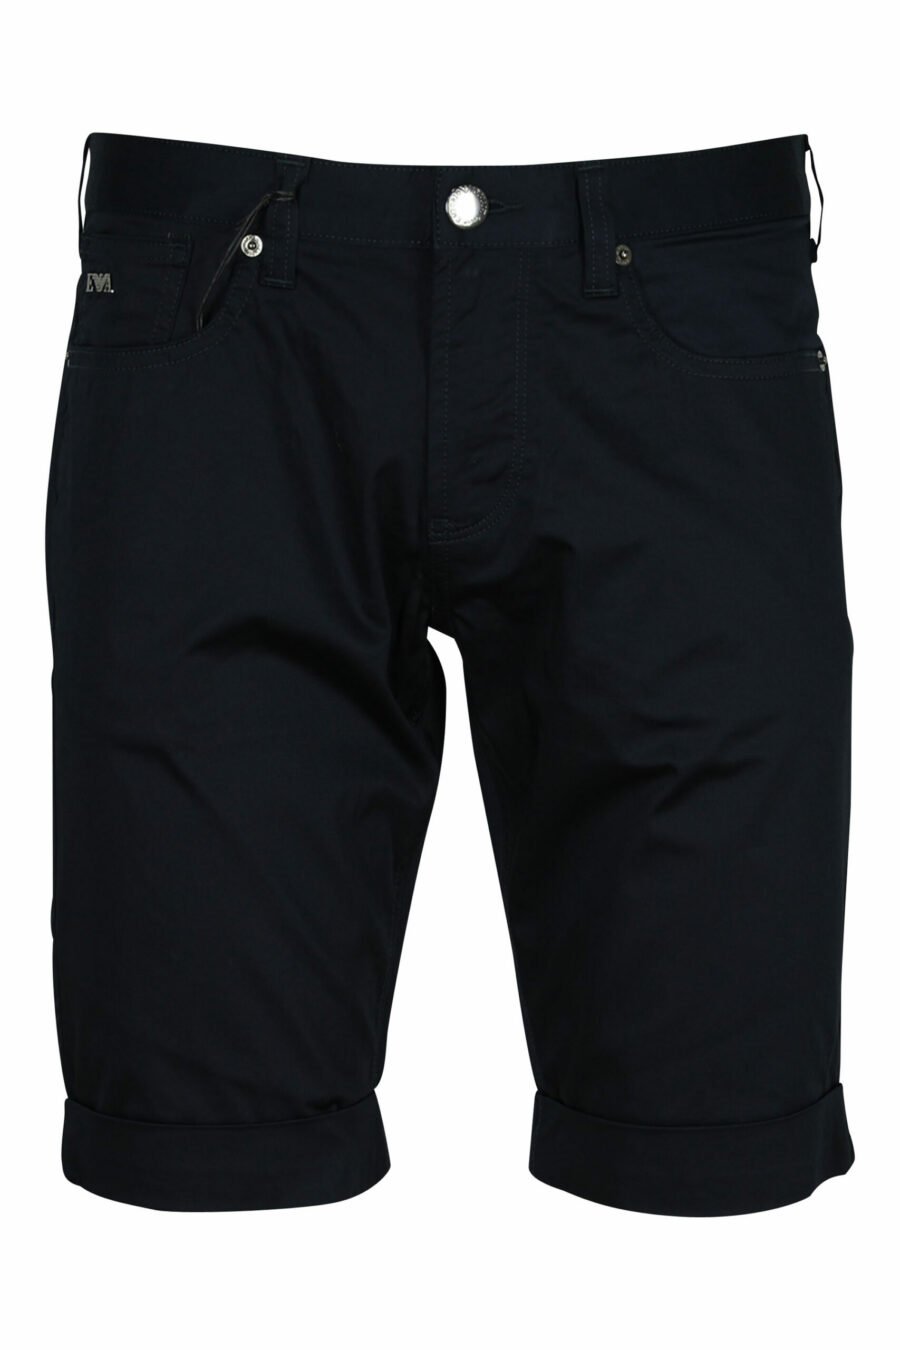 Pantalón corto azul oscuro con minilogo águila - 8057163567200 scaled